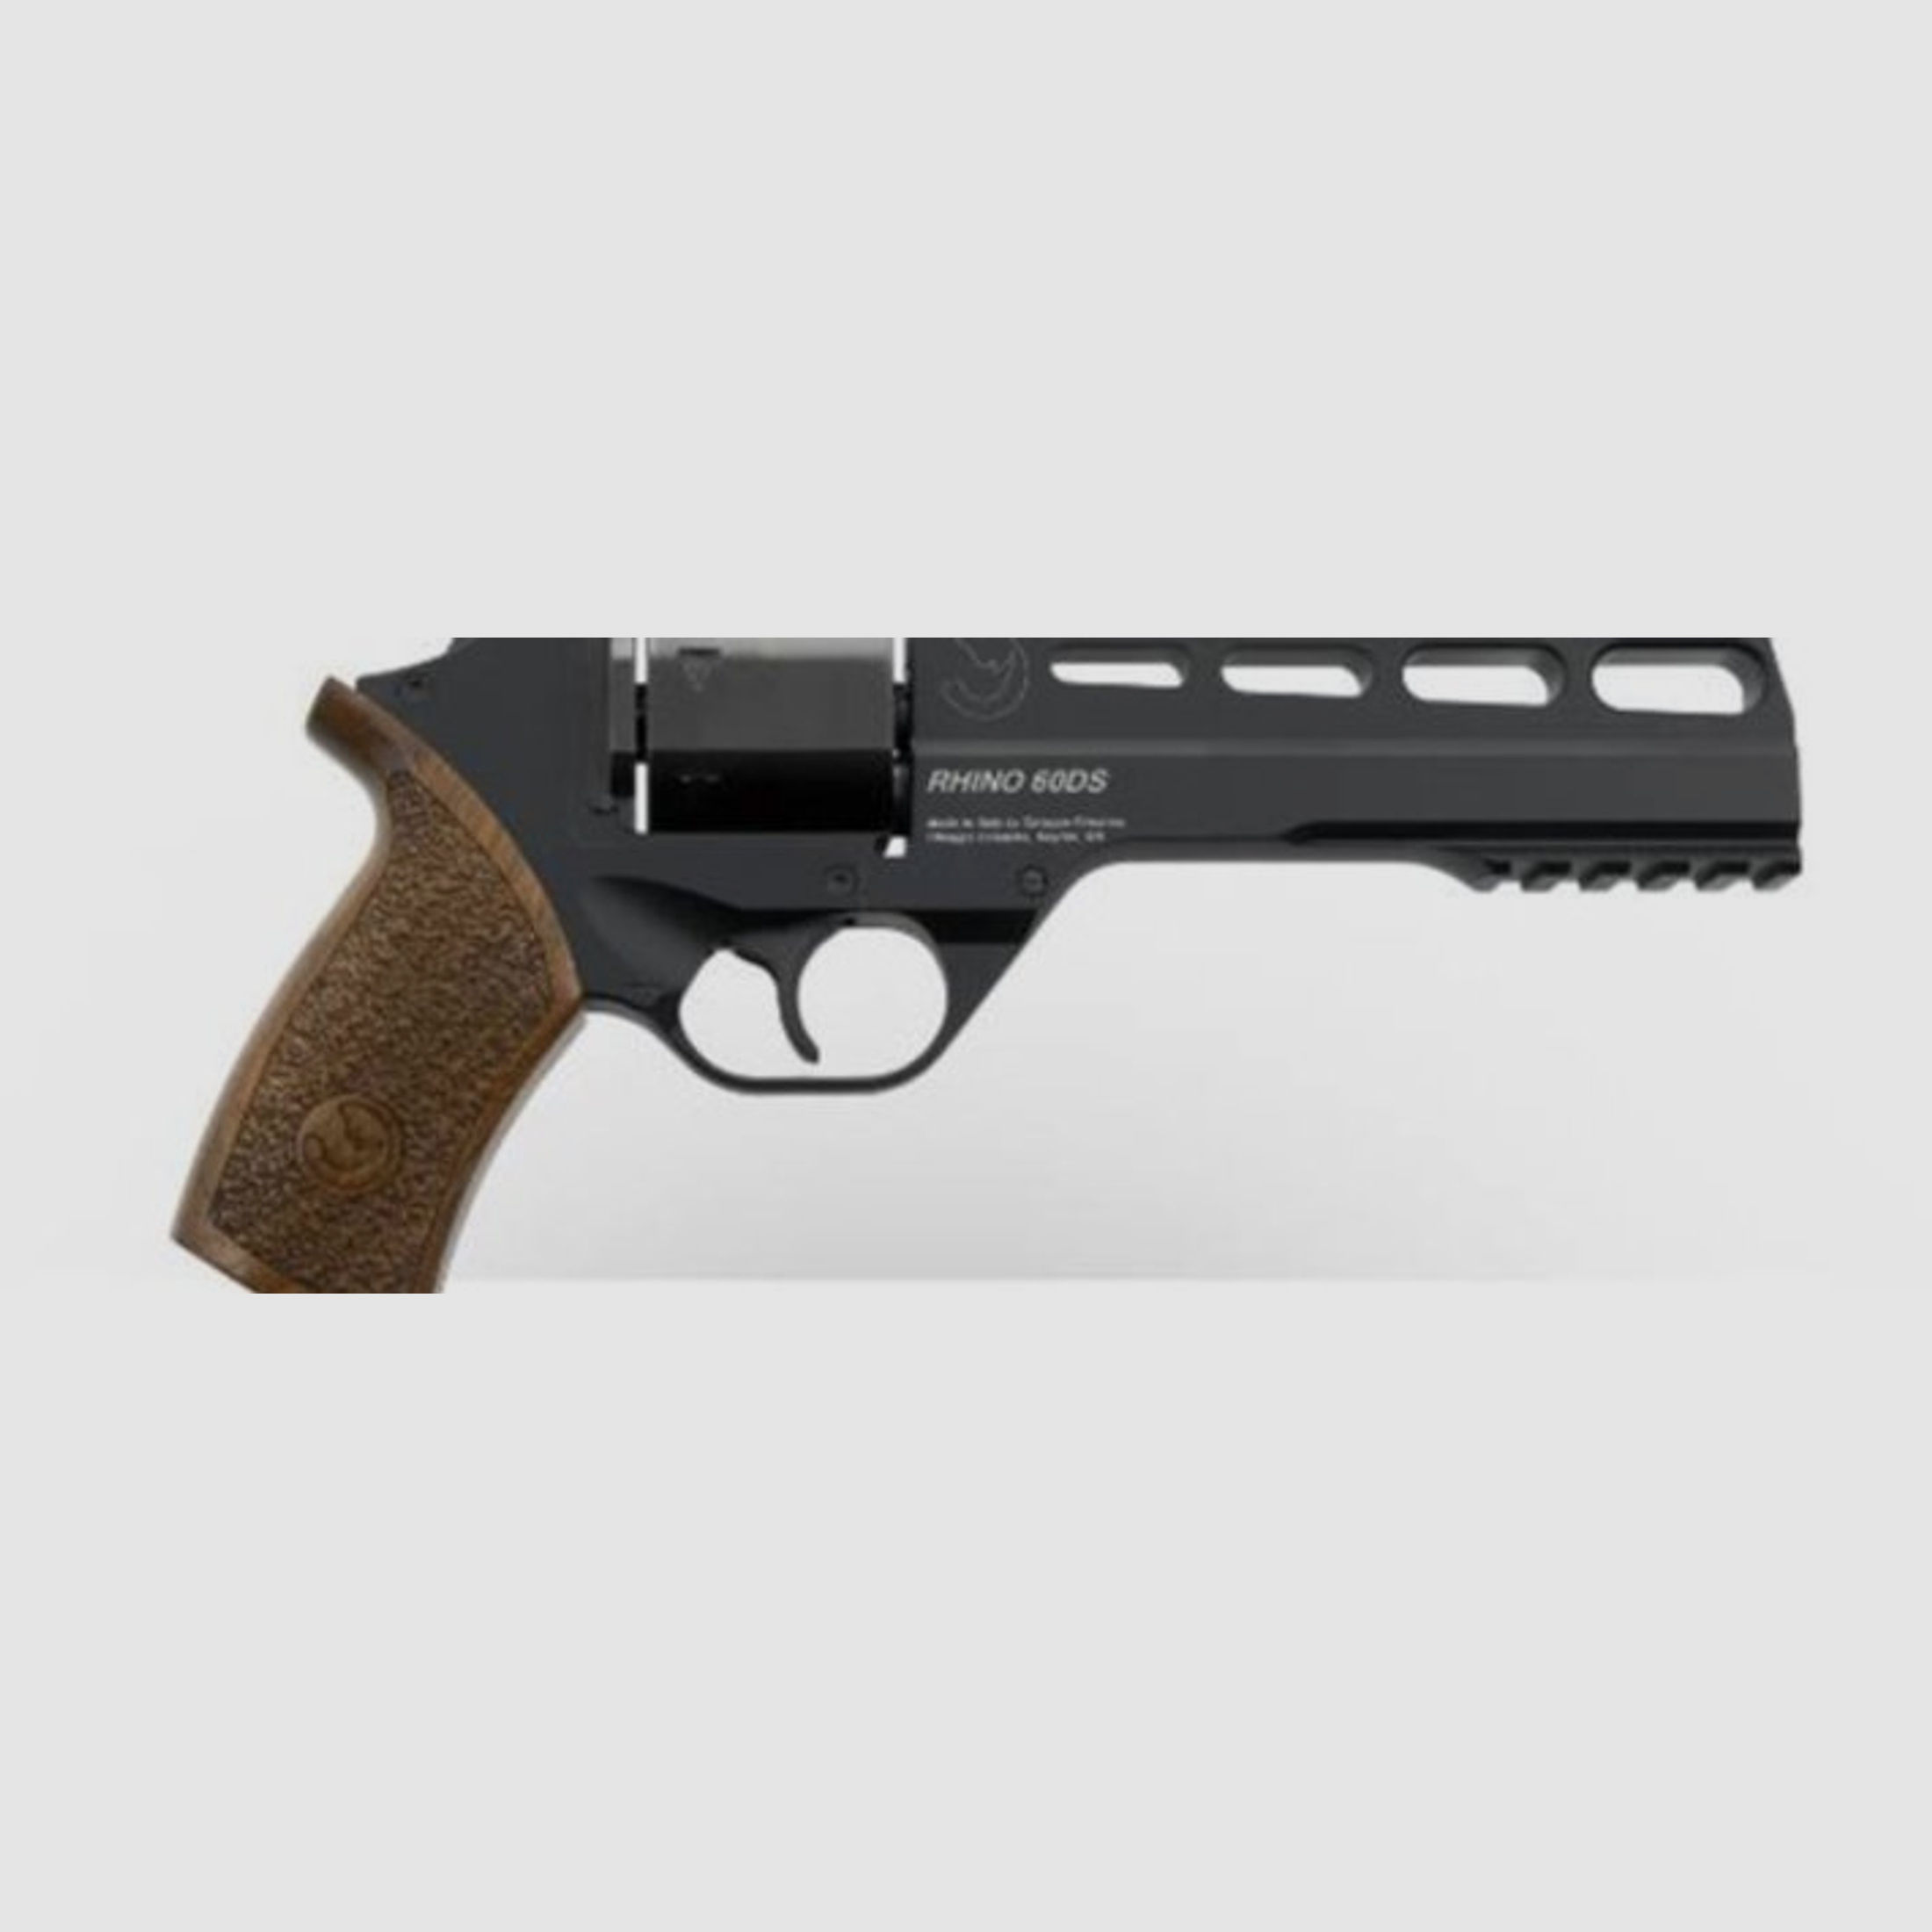 CHIAPPA RHINO 60DS Revolver brüniert